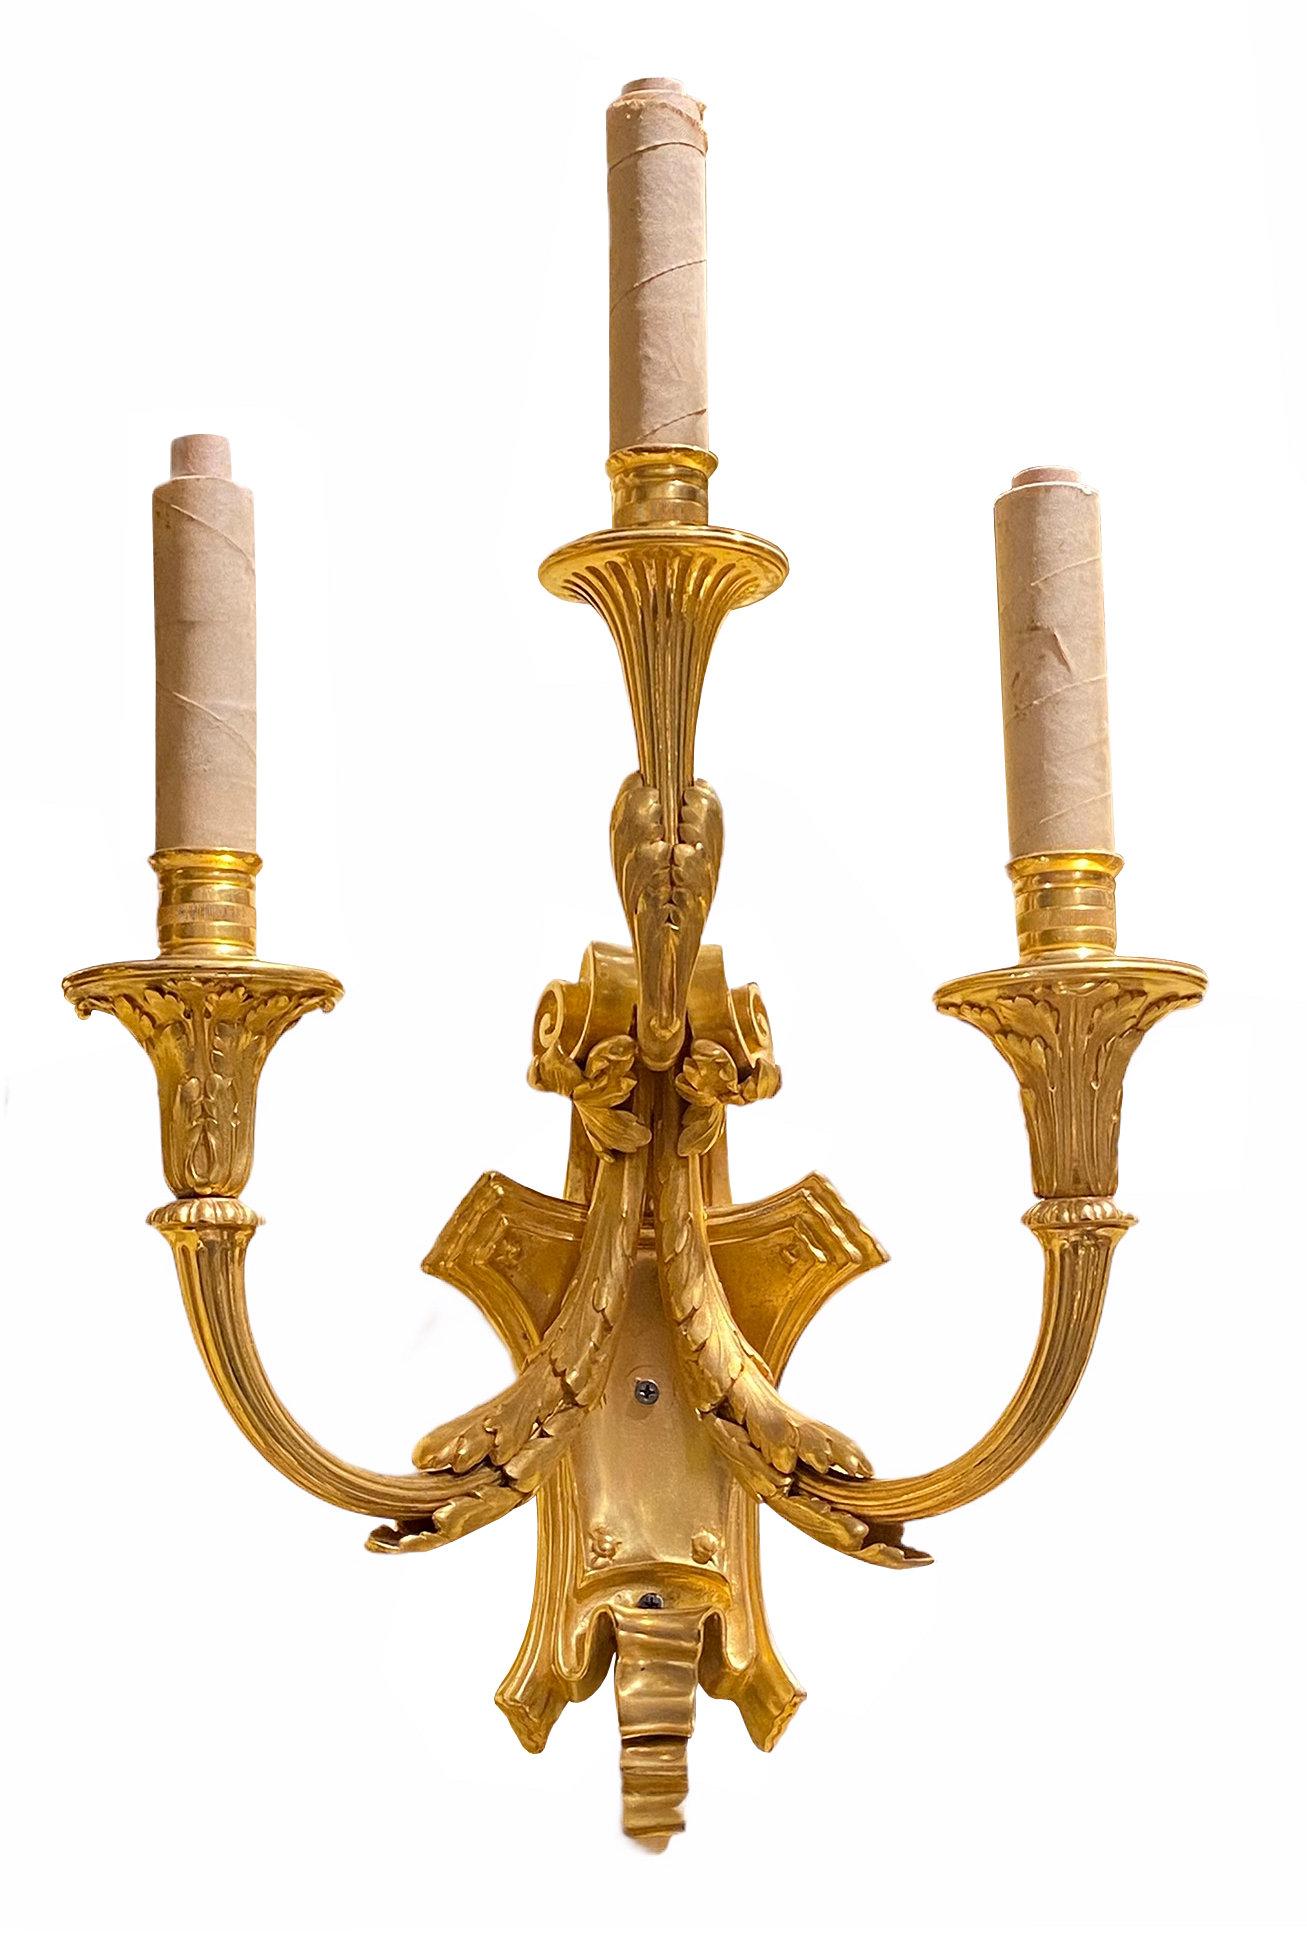 Ein Paar dreiflammige vergoldete Bronzelampen aus dem 19. Jahrhundert im neoklassischen Louis-XVI-Stil von Edward F. Caldwell, mit feinstem Guss, feinster Verarbeitung und Vergoldung.  Mit eingeprägter Herstellermarke auf der Rückseite und